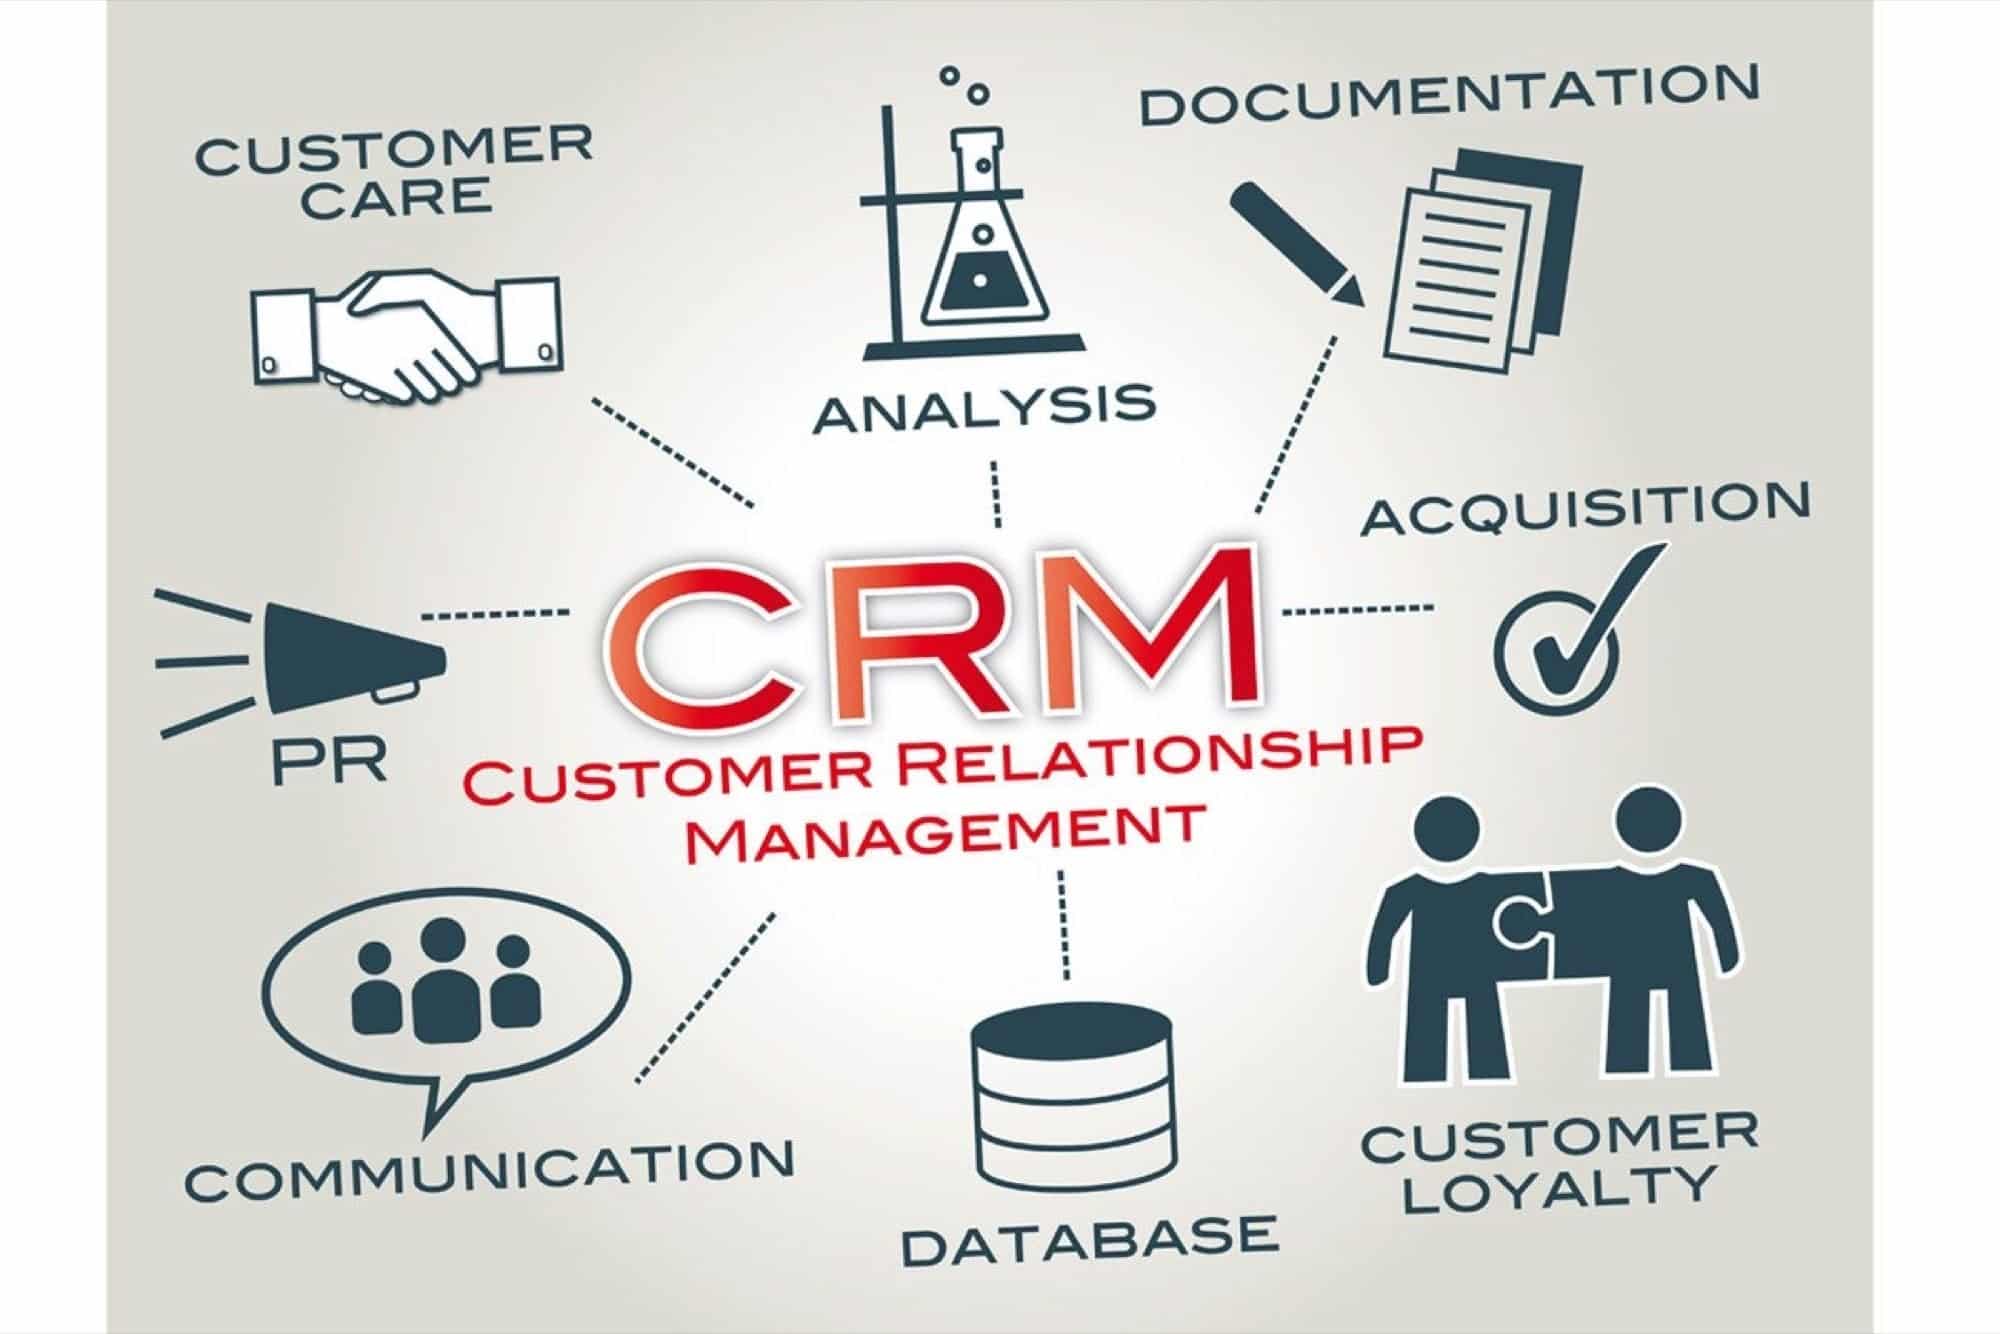 Manajemen Hubungan Pelanggan (CRM)